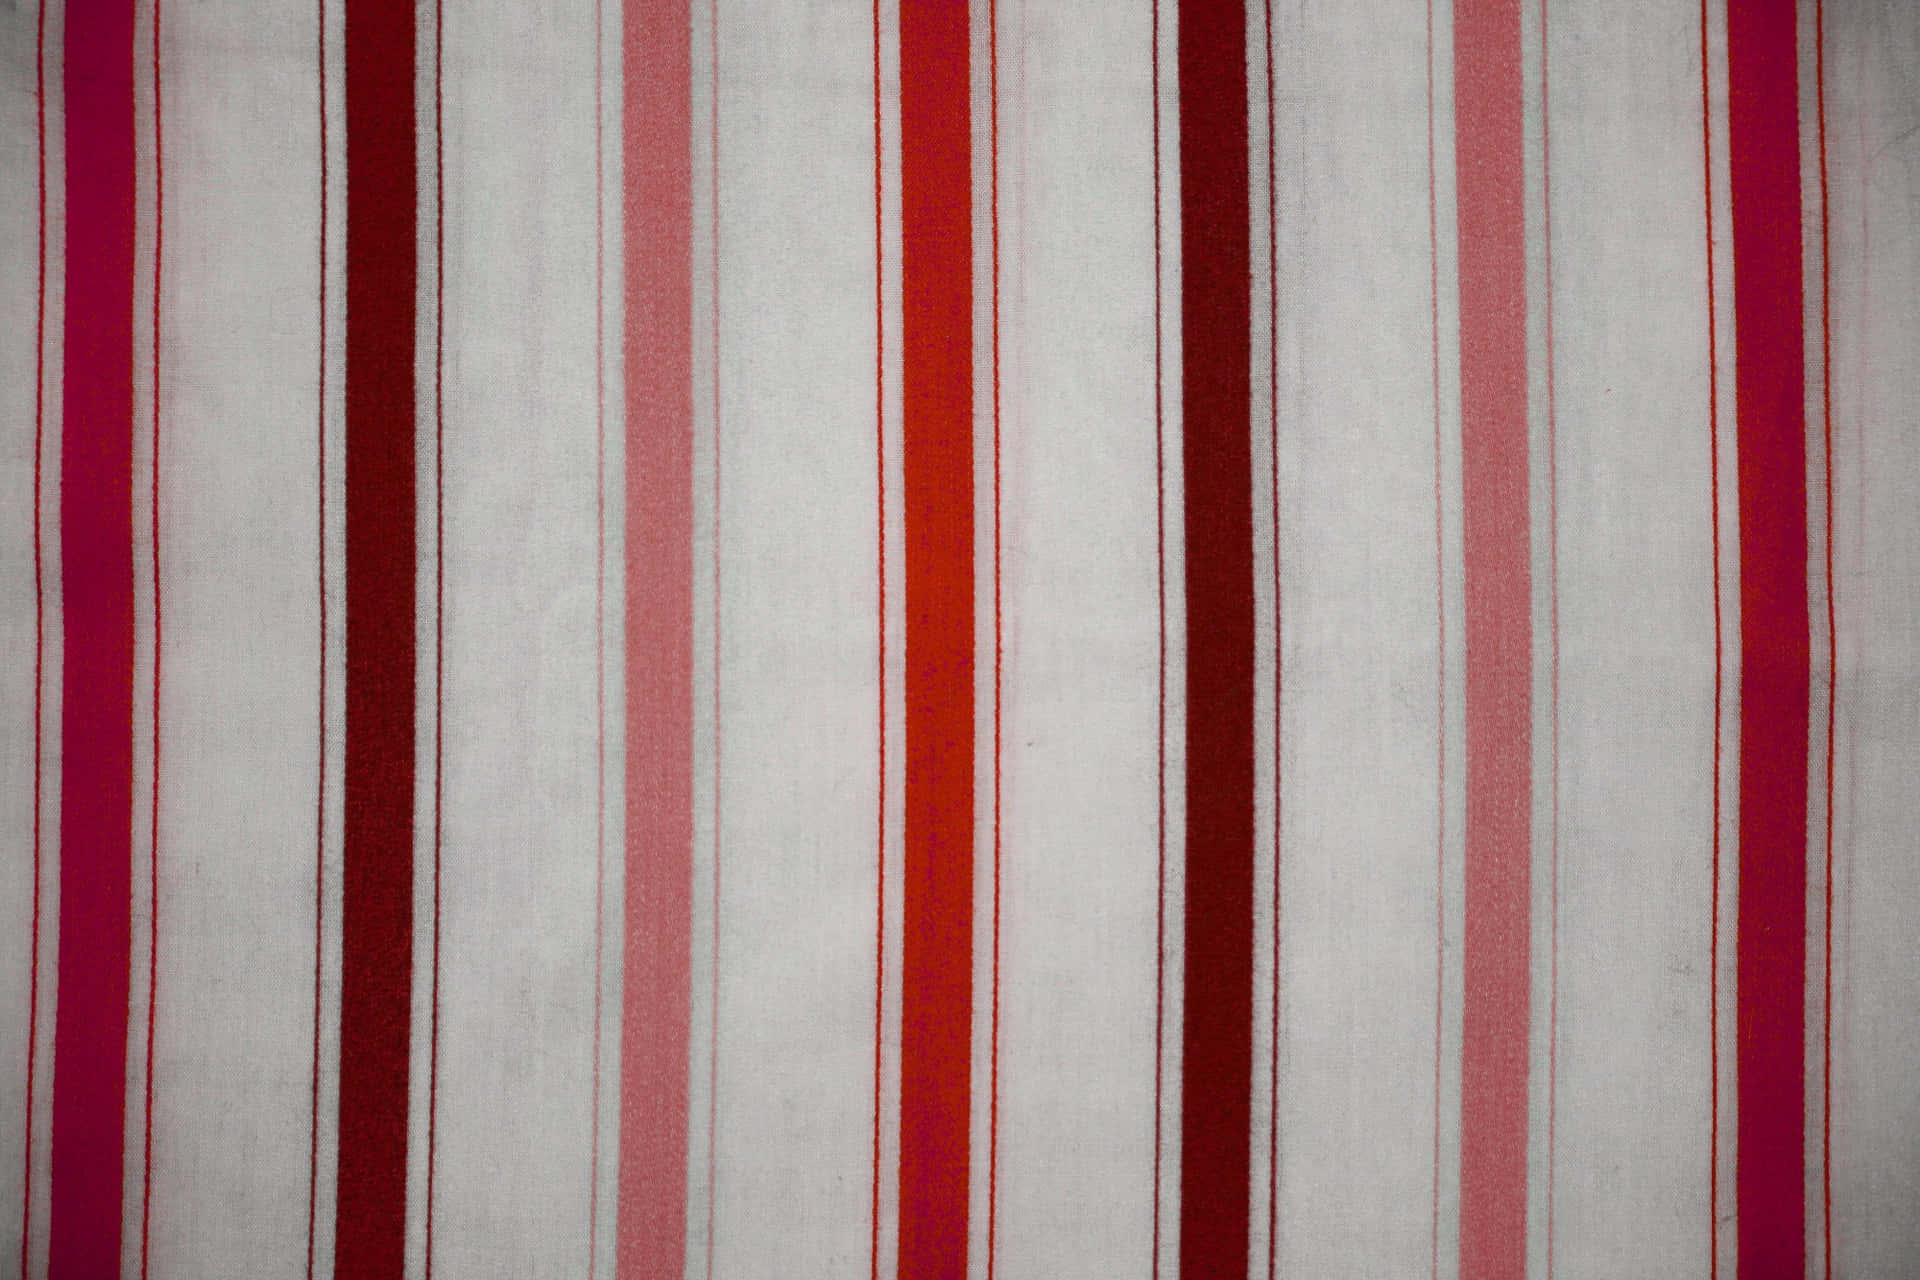 Imagemde Textura De Tecido Vertical Vermelho Rosa Marrom.